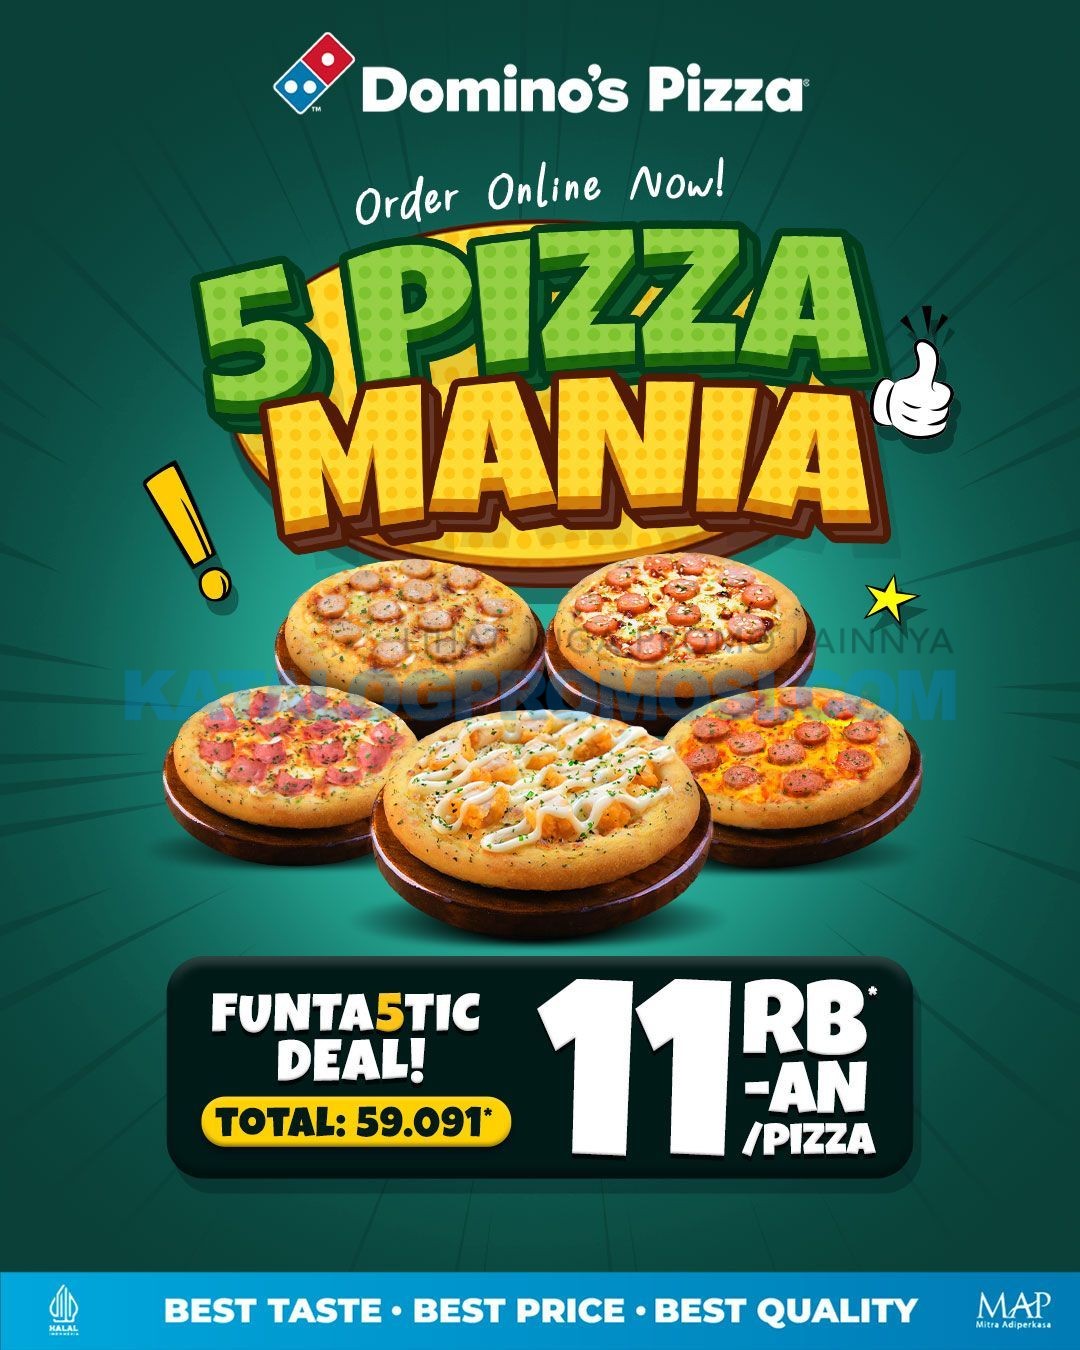 Promo DOMINO’S PIZZA FUNTA5TIC DEAL - Paket 5 Pizza Mania mulai Rp. 11RIBUAN per pizza